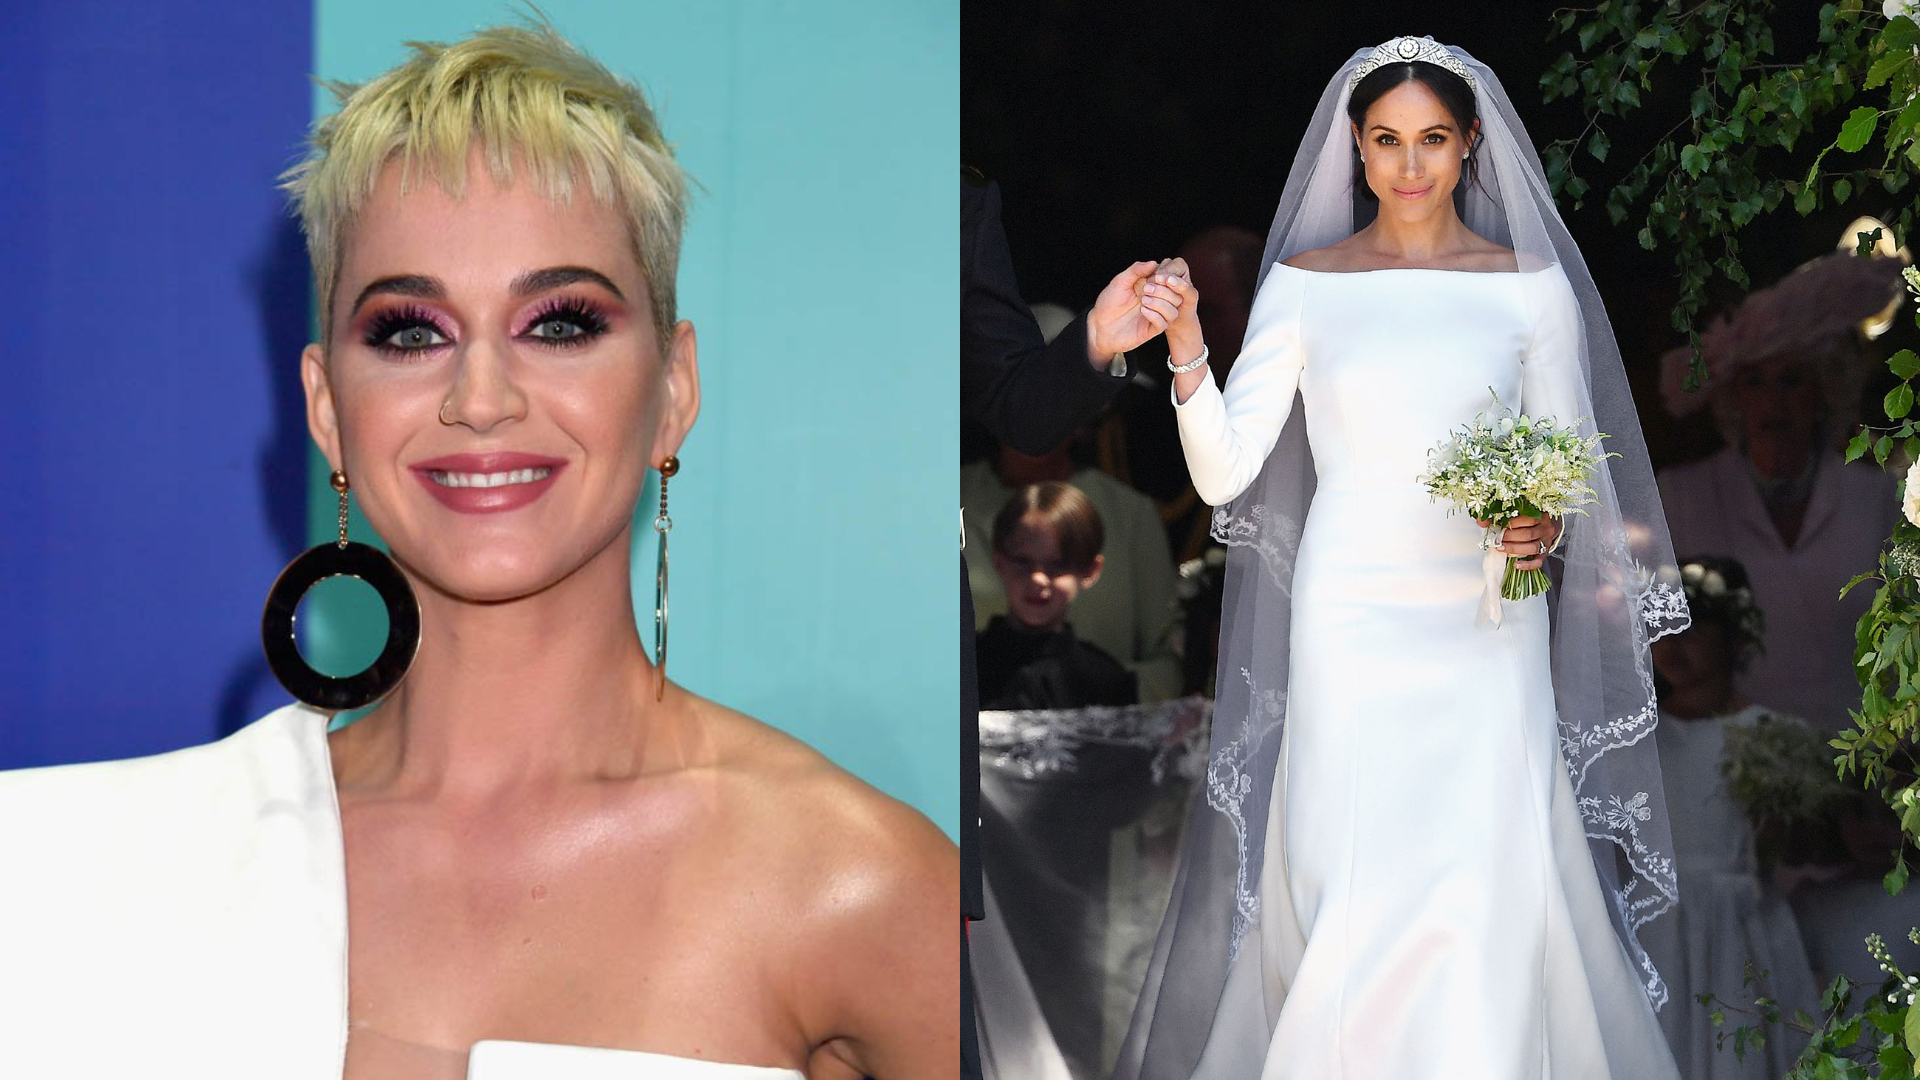 Mariage du Prince Harry et de Meghan Markle : La chanteuse Katy Perry critique la robe de la mariée